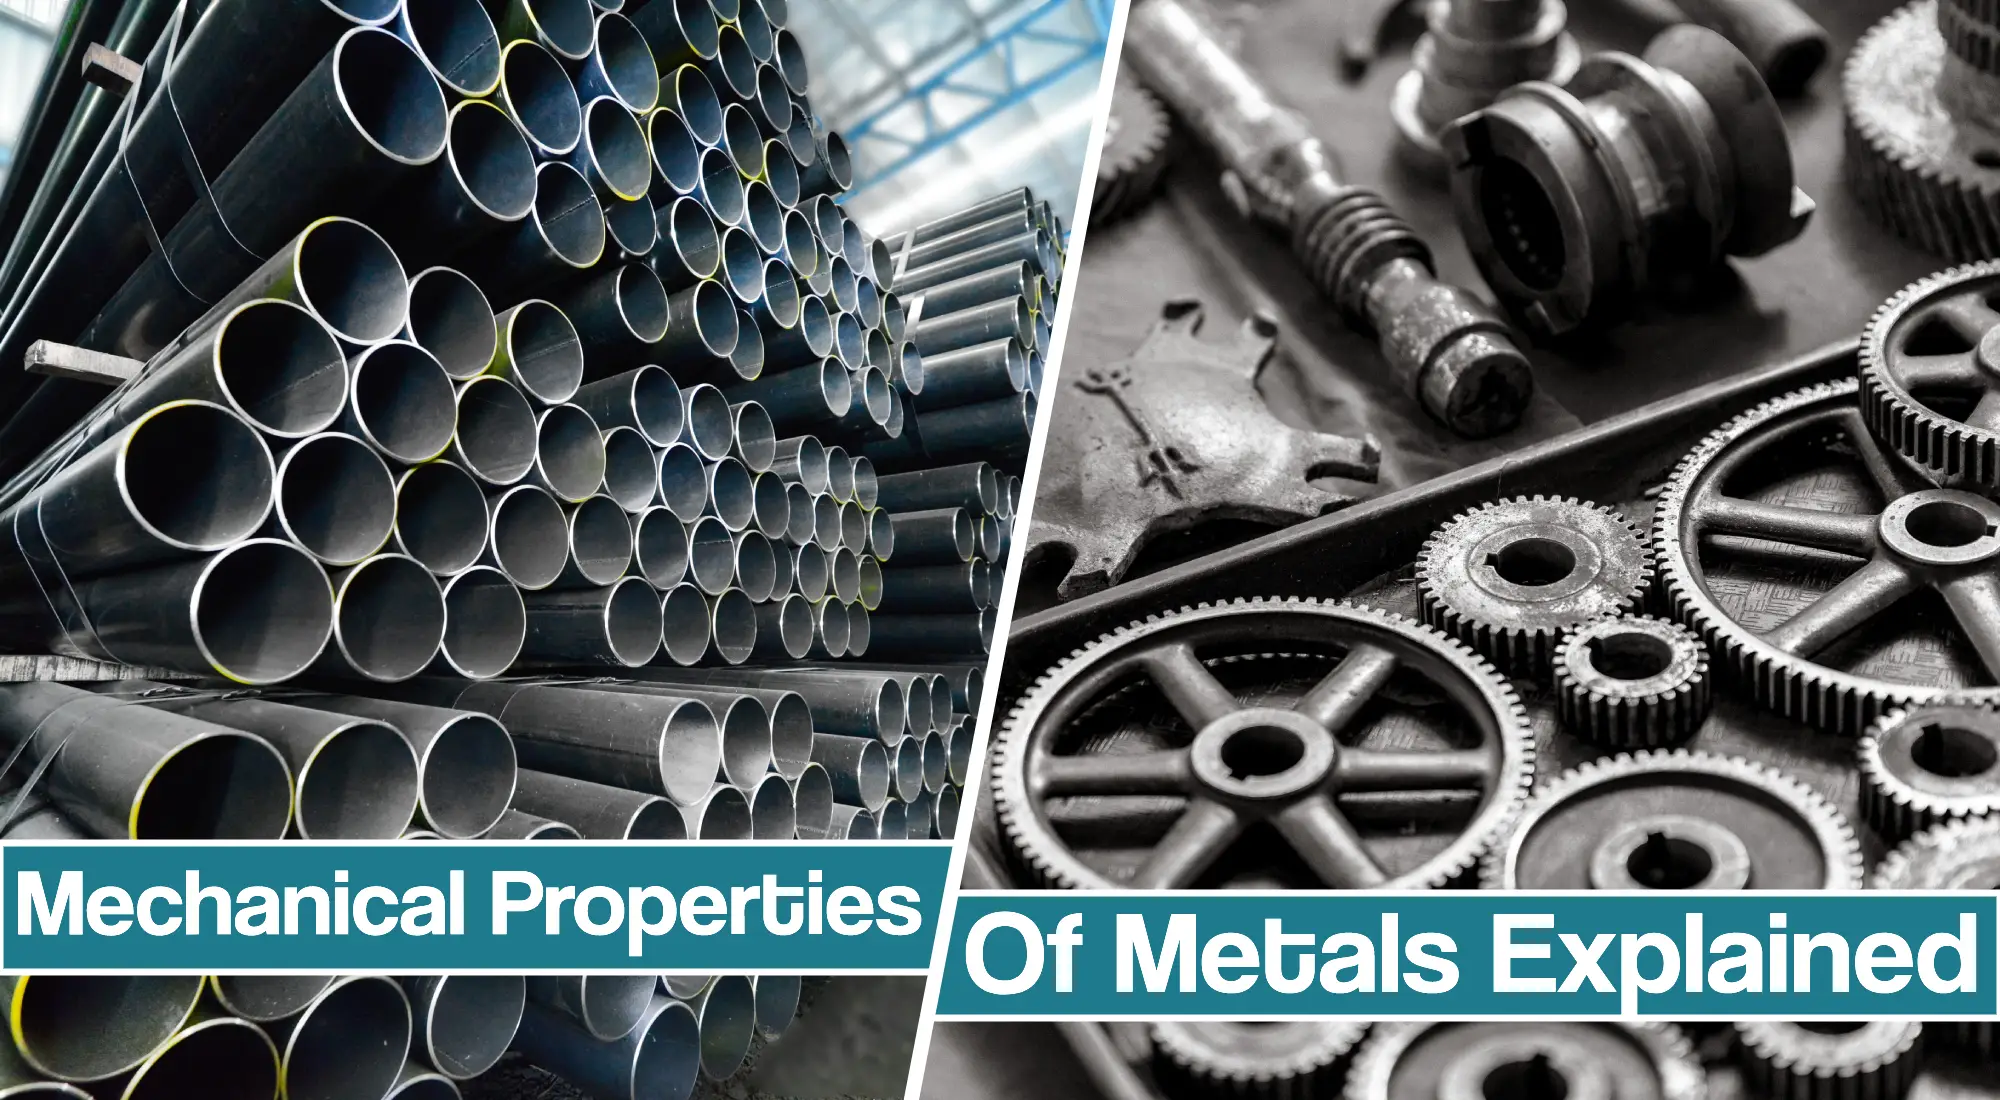 Mechanical Properties Of Metals In Welding